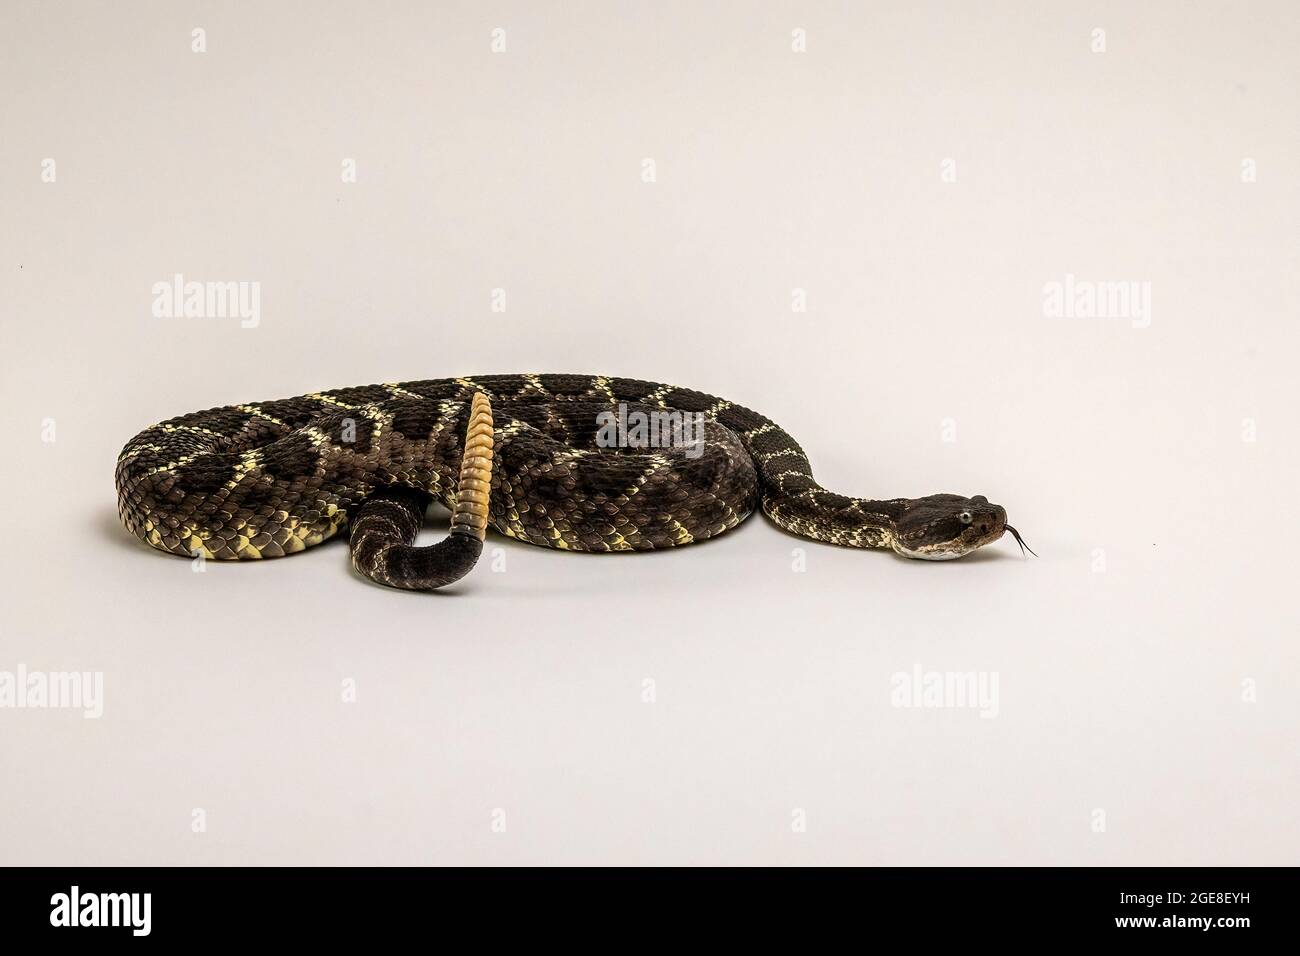 Arizona Black Rattlesnake Isolated on White Background Stock Photo